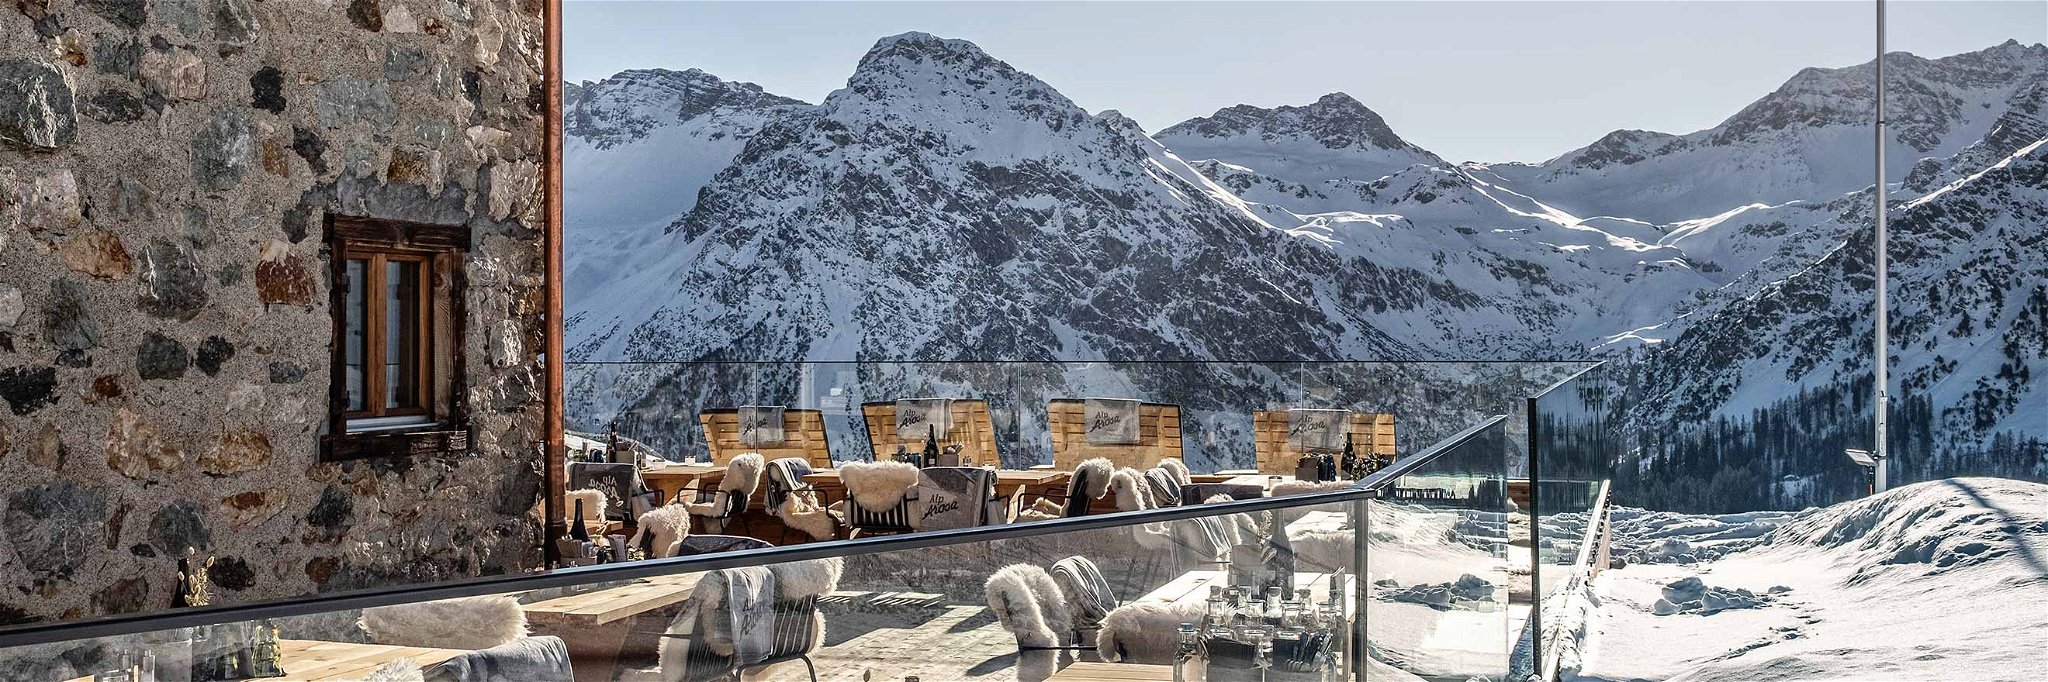 Das Bergrestaurant «AlpArosa» bietet beste Alpenkulinarik auf 2020 Meter über Meer.